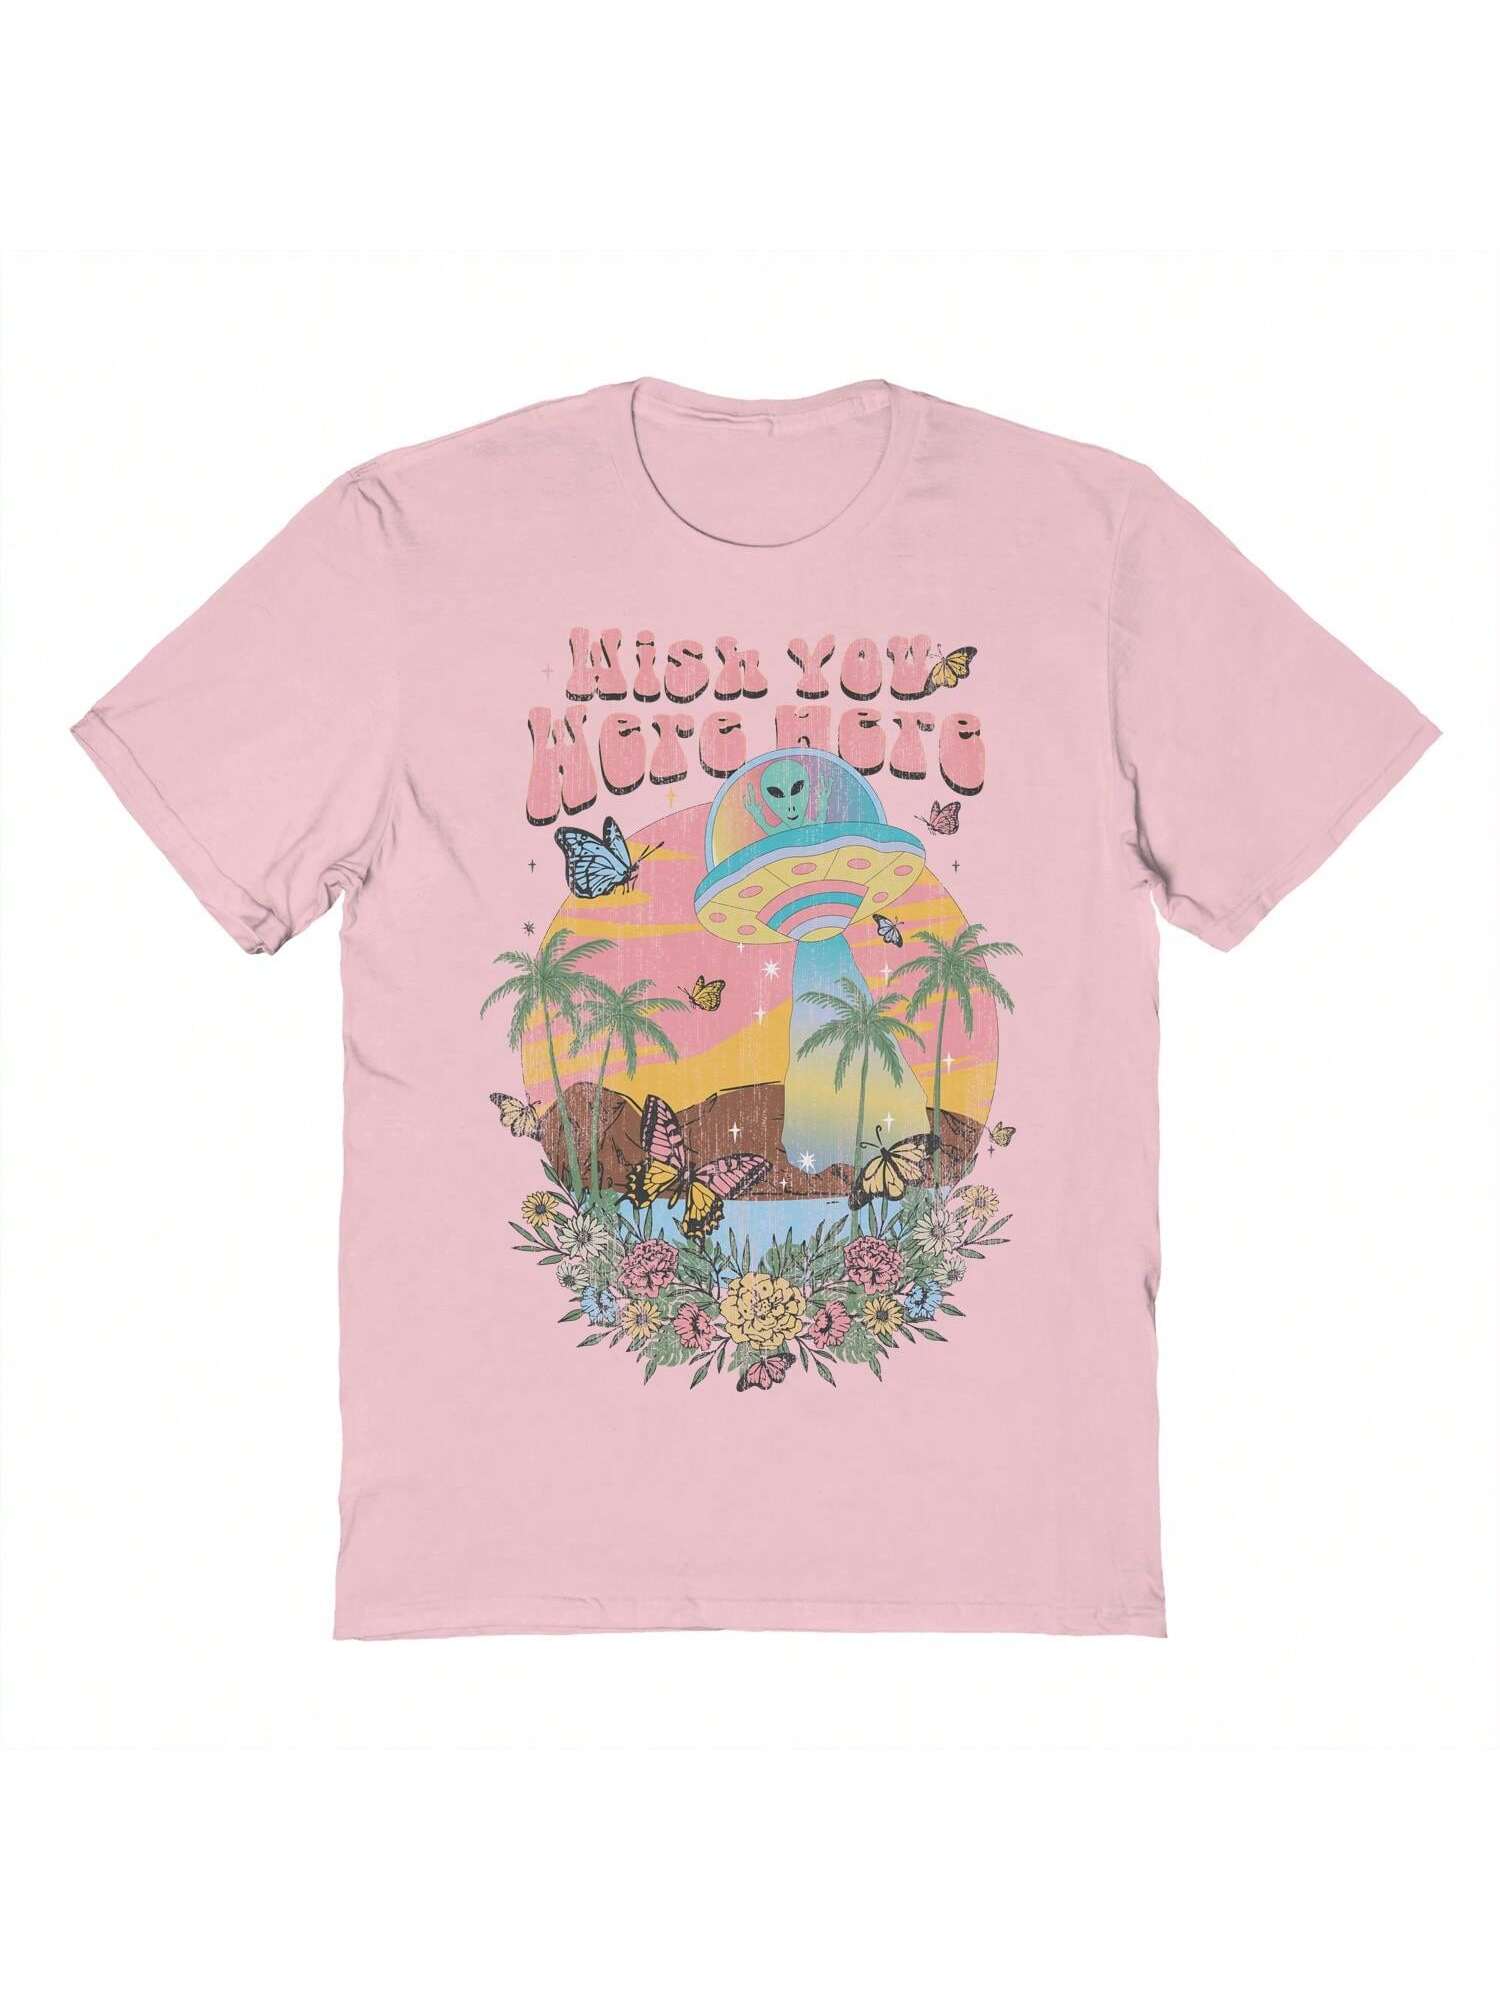 Хлопковая футболка унисекс с короткими рукавами с графическим рисунком «Почти там хотелось бы, розовый